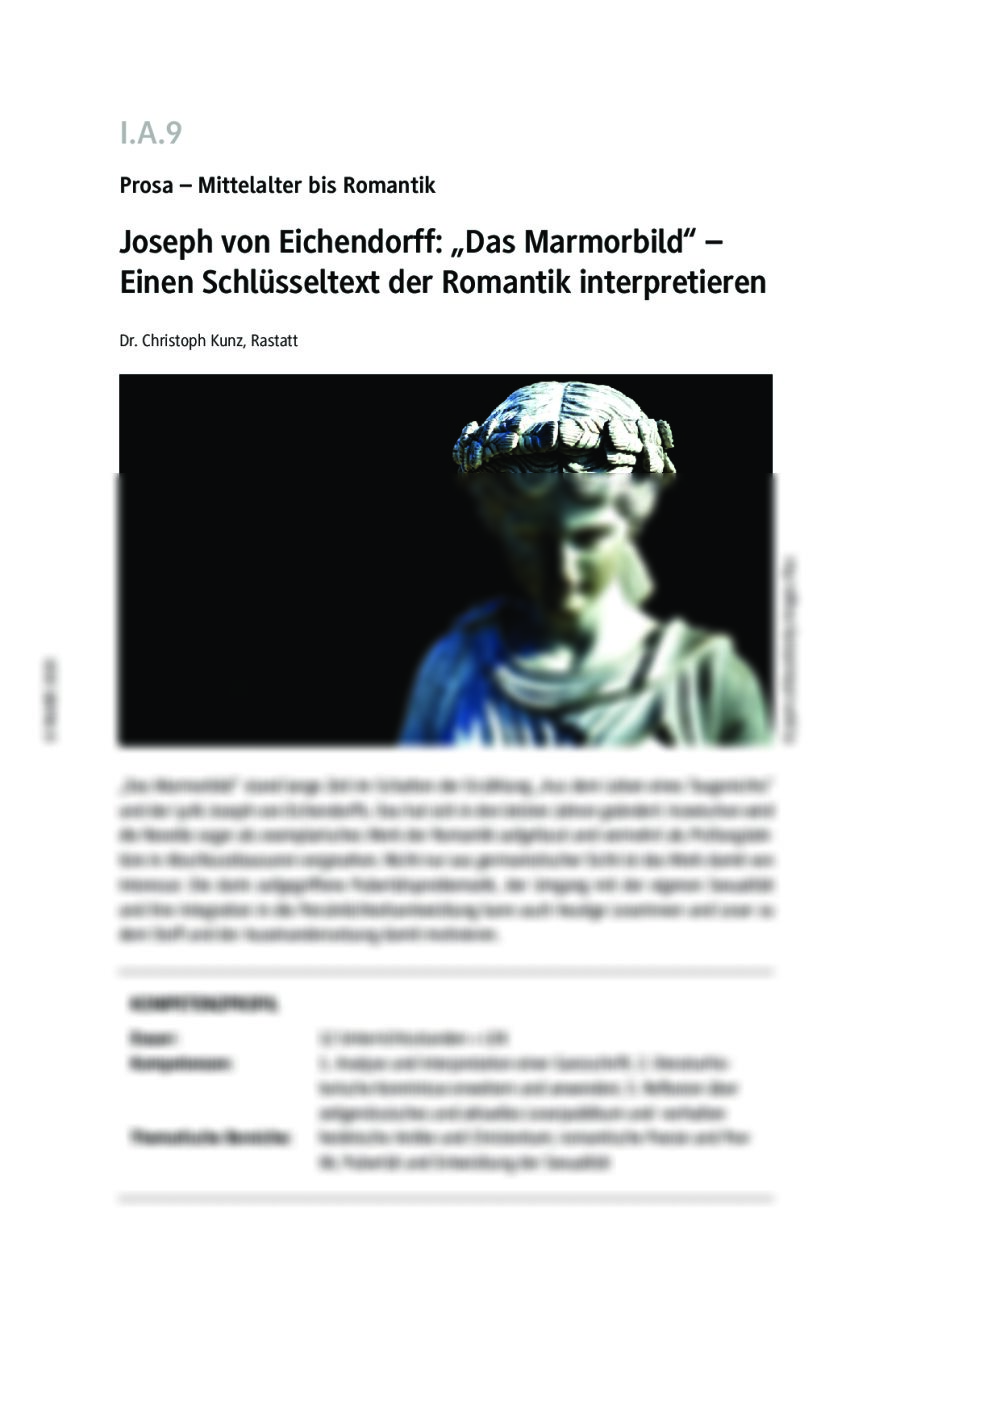 Joseph von Eichendorff: "Das Marmorbild" - Seite 1